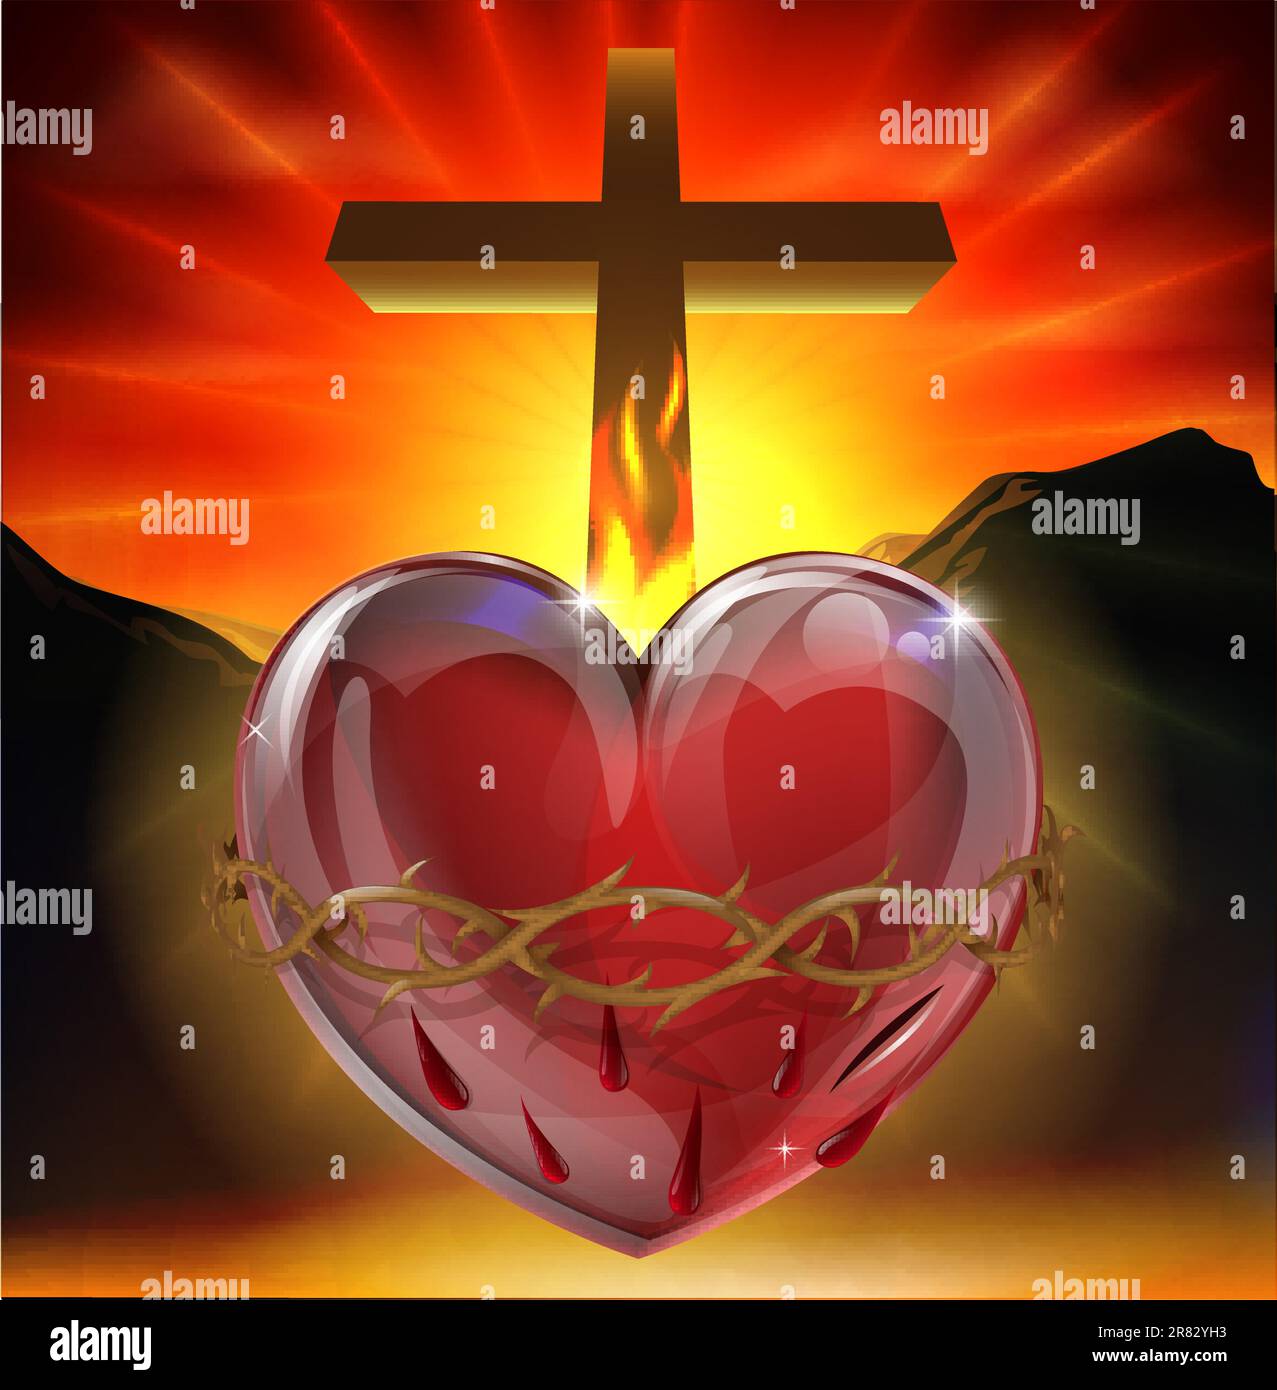 Illustrazione del simbolo cristiano del sacro cuore. Un cuore che brilla di luce divina con corona di spine, lance ferita e fiamma representi... Illustrazione Vettoriale